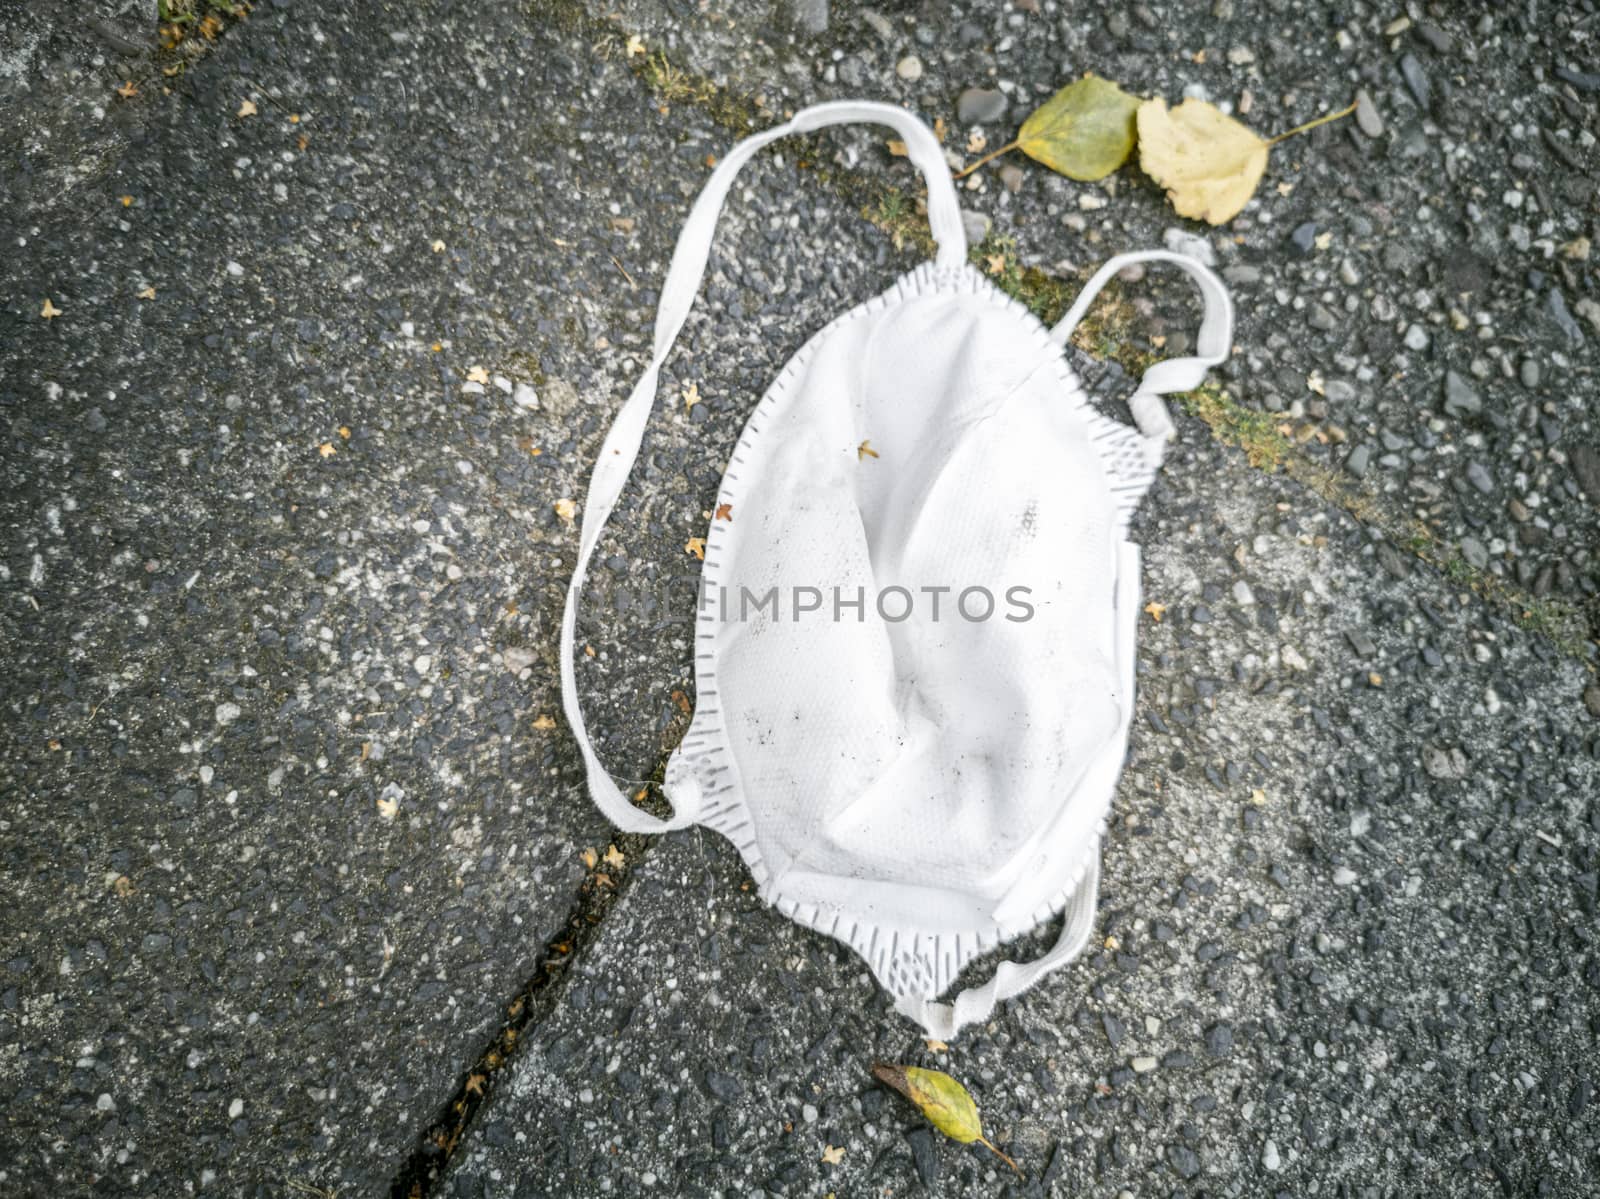 N95 white masks on the ground. Corona virus pollution. Leherheide, Bremerhaven.